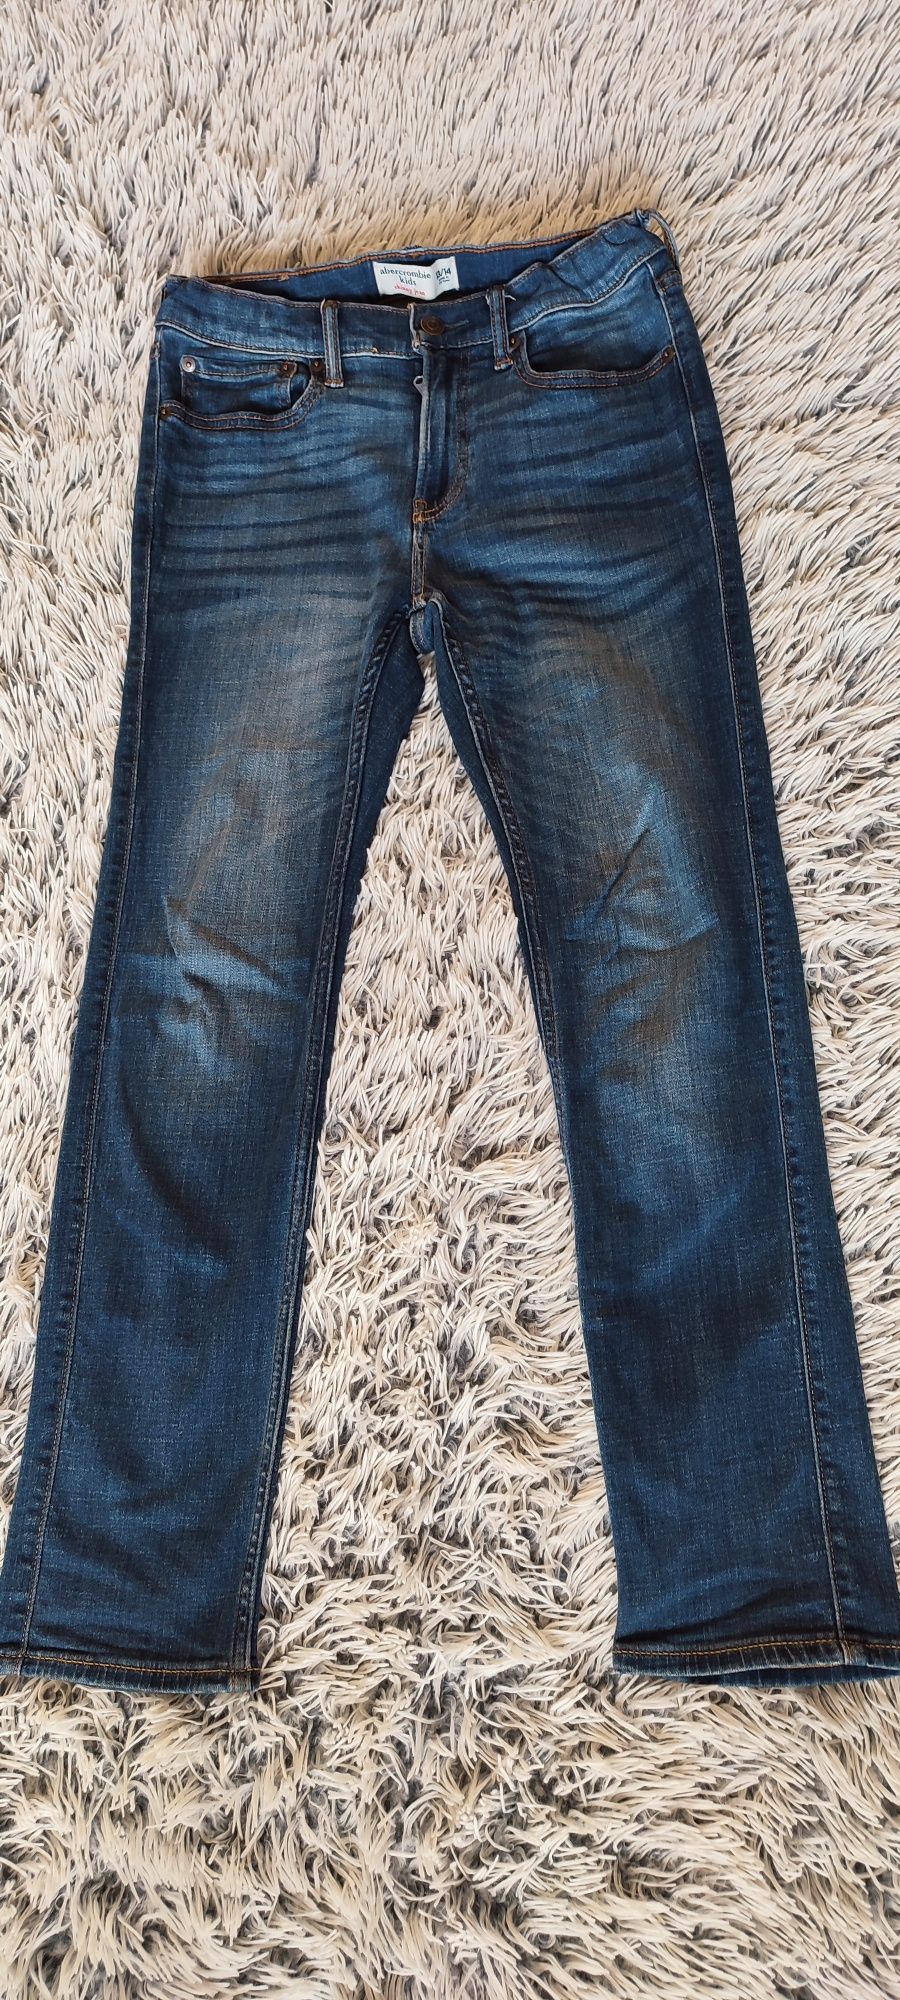 Spodnie Abercrombie Kids jeansowe Skinny jean 158-164